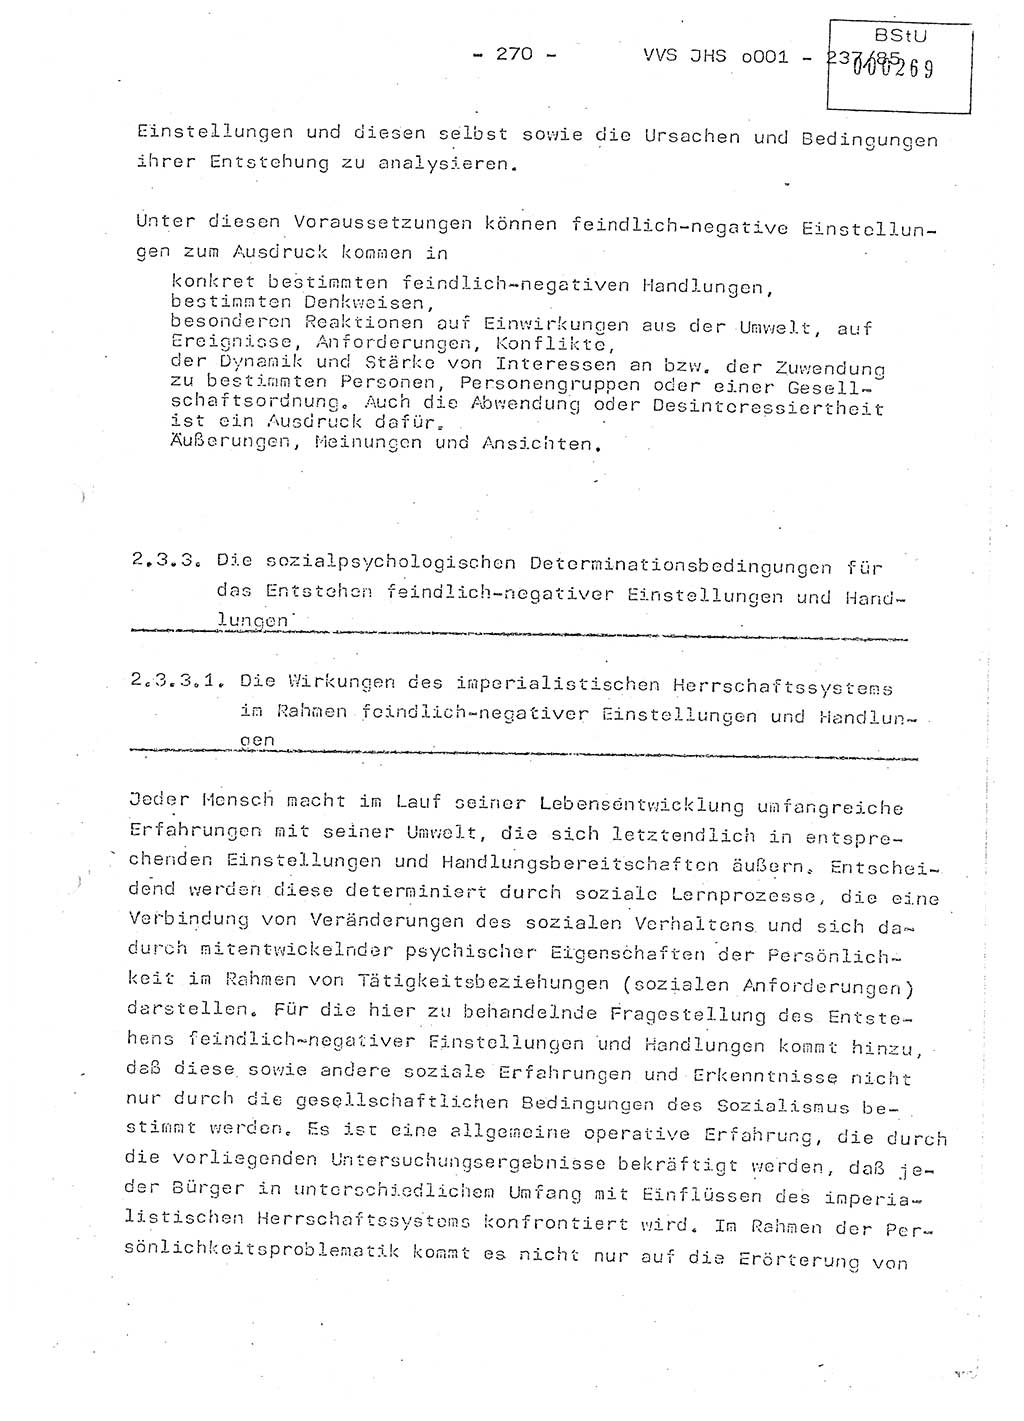 Dissertation Oberstleutnant Peter Jakulski (JHS), Oberstleutnat Christian Rudolph (HA Ⅸ), Major Horst Böttger (ZMD), Major Wolfgang Grüneberg (JHS), Major Albert Meutsch (JHS), Ministerium für Staatssicherheit (MfS) [Deutsche Demokratische Republik (DDR)], Juristische Hochschule (JHS), Vertrauliche Verschlußsache (VVS) o001-237/85, Potsdam 1985, Seite 270 (Diss. MfS DDR JHS VVS o001-237/85 1985, S. 270)